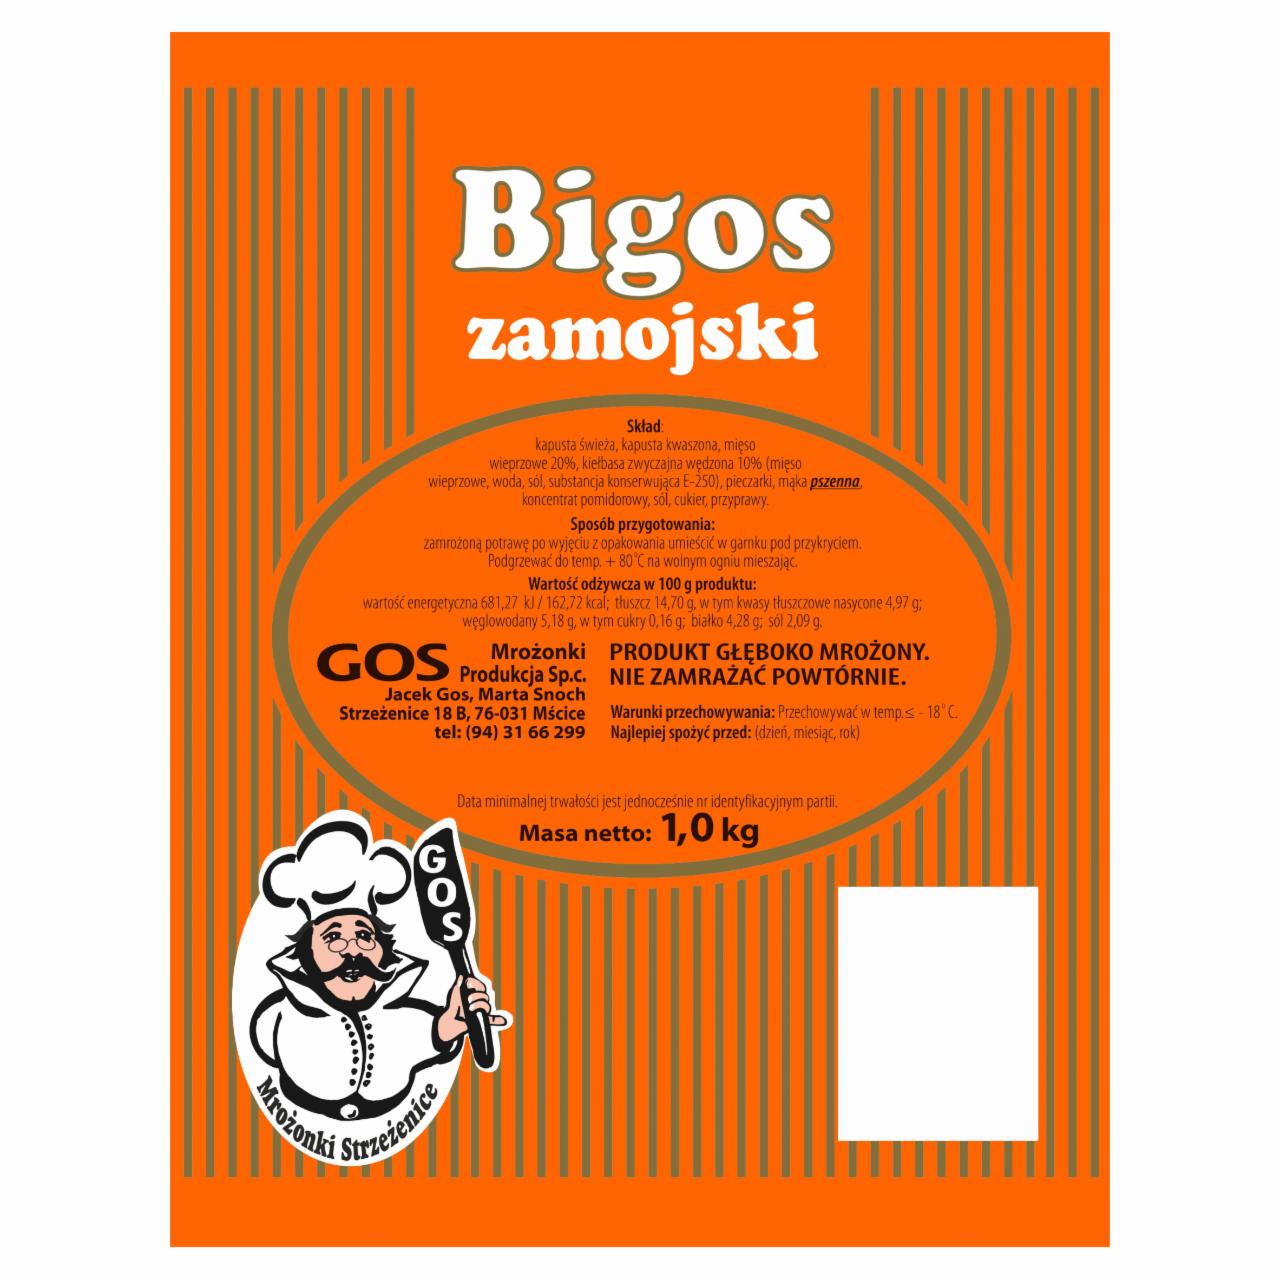 Zdjęcia - GOS Mrożonki Strzeżenice Bigos zamojski 1 kg